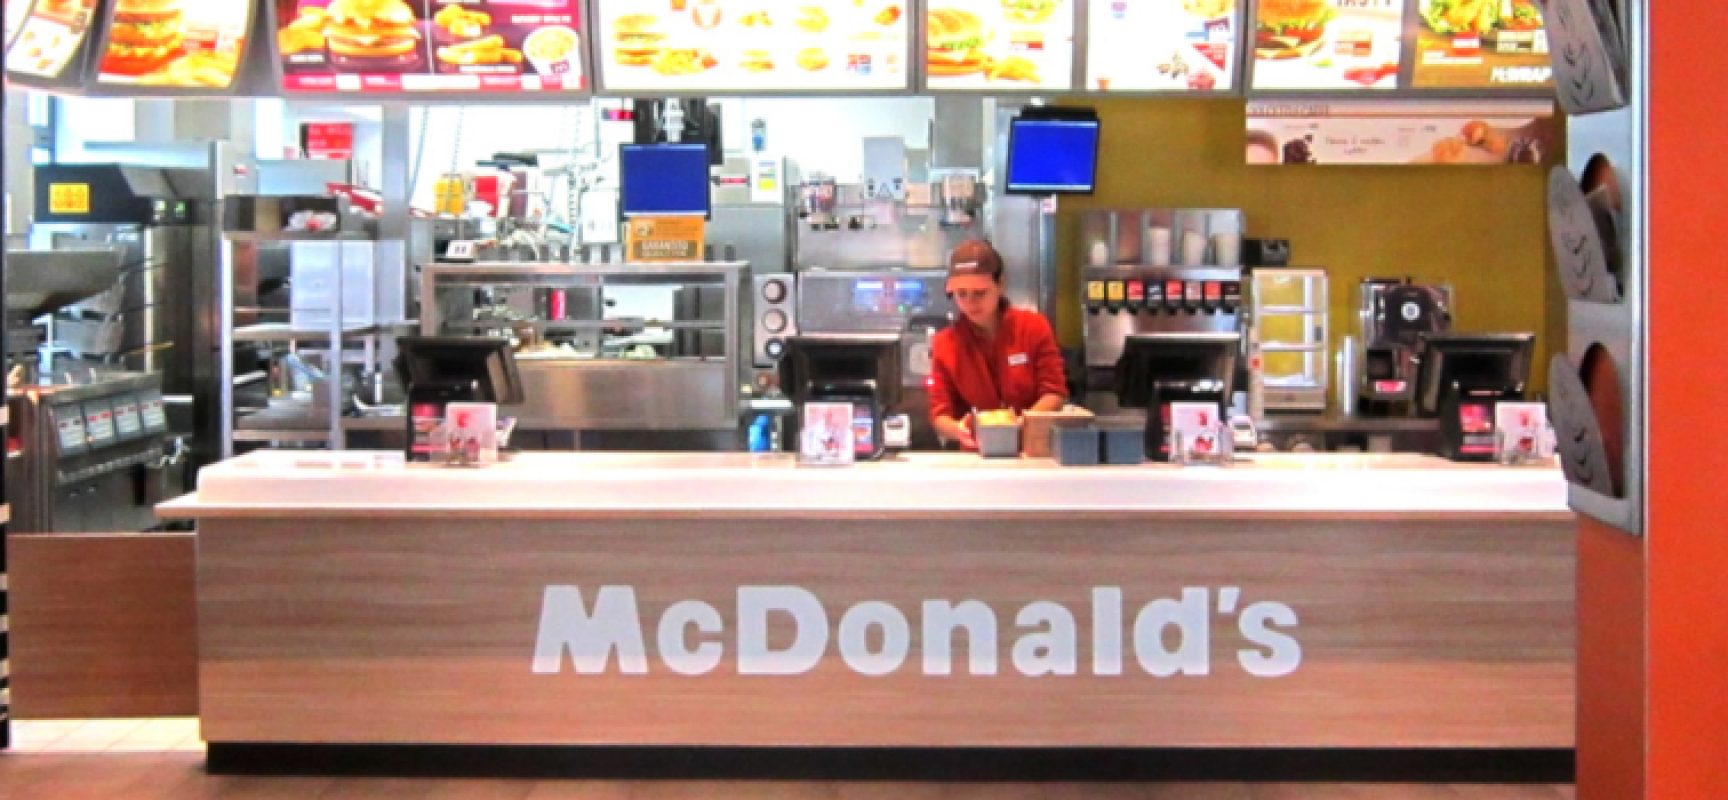 McDonald’s offre opportunità di lavoro nelle sedi di Bisceglie e Molfetta